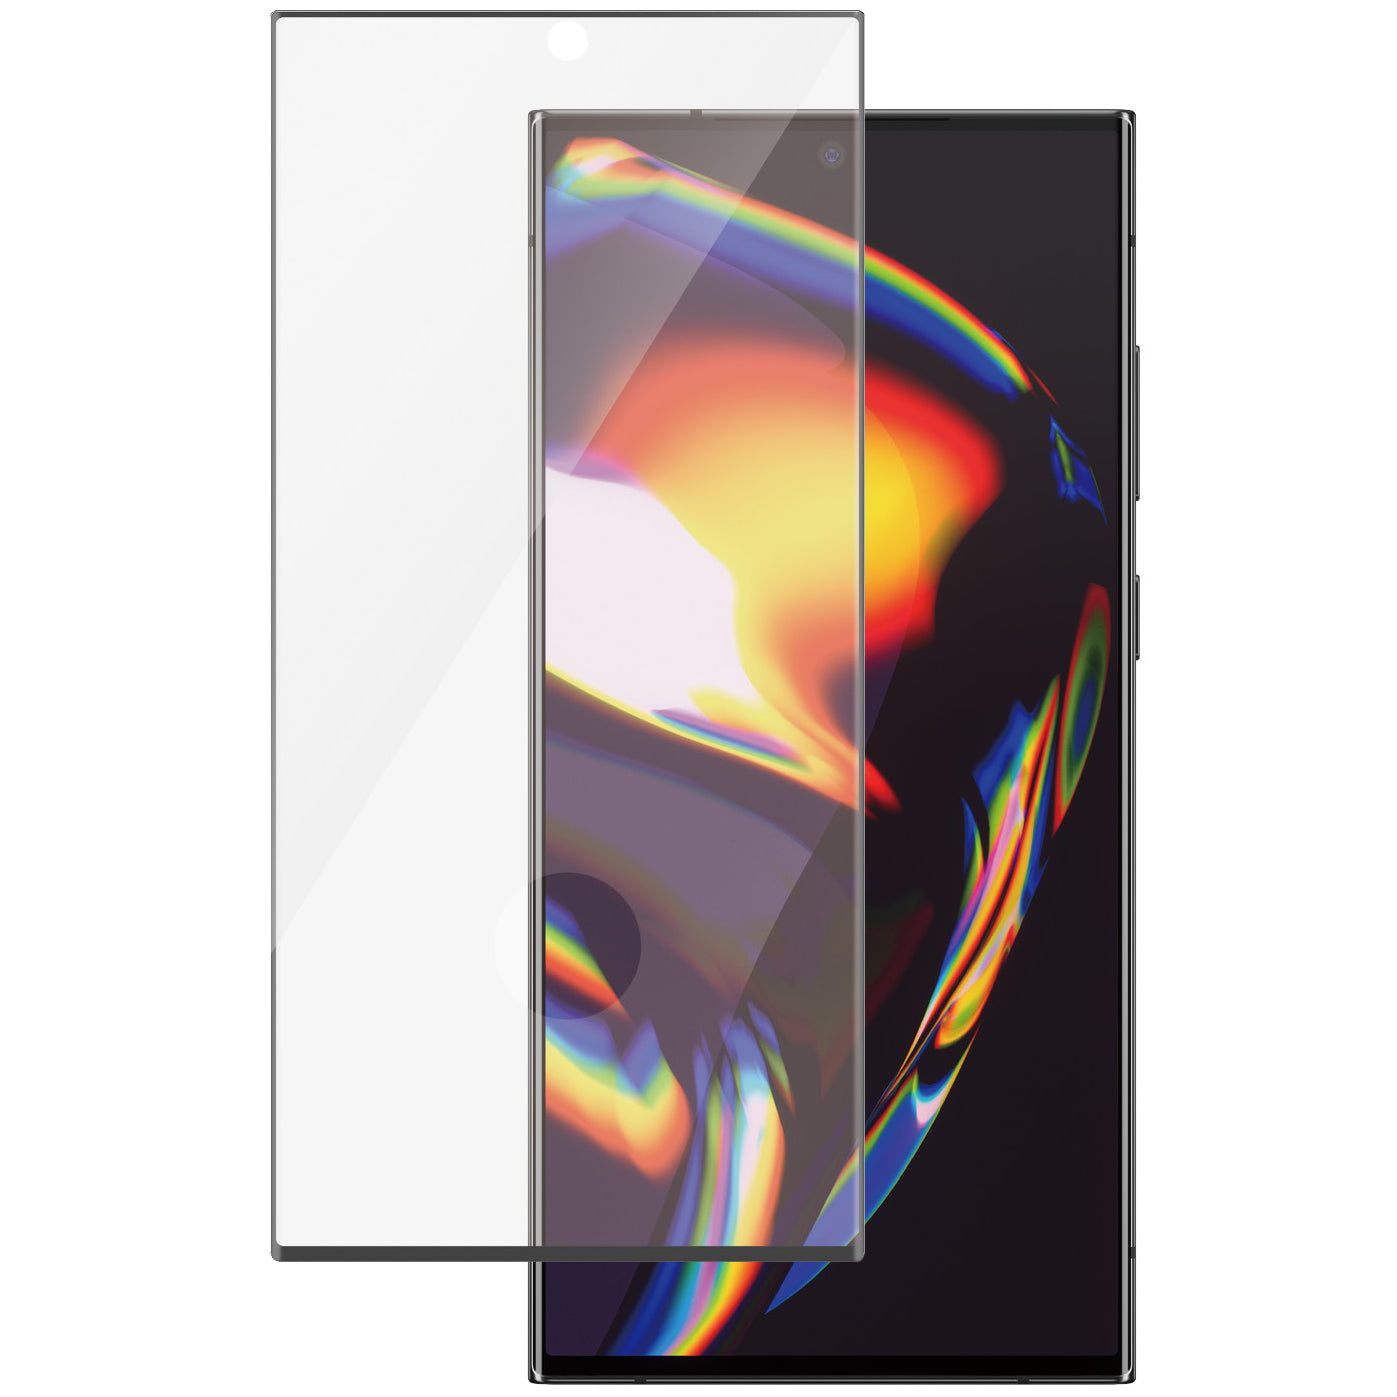 Gehärtetes Glas für das gesamte Display PanzerGlass Ultra-Wide Fit + EasyAligner für Galaxy S23 Ultra, schwarzer Rahmen